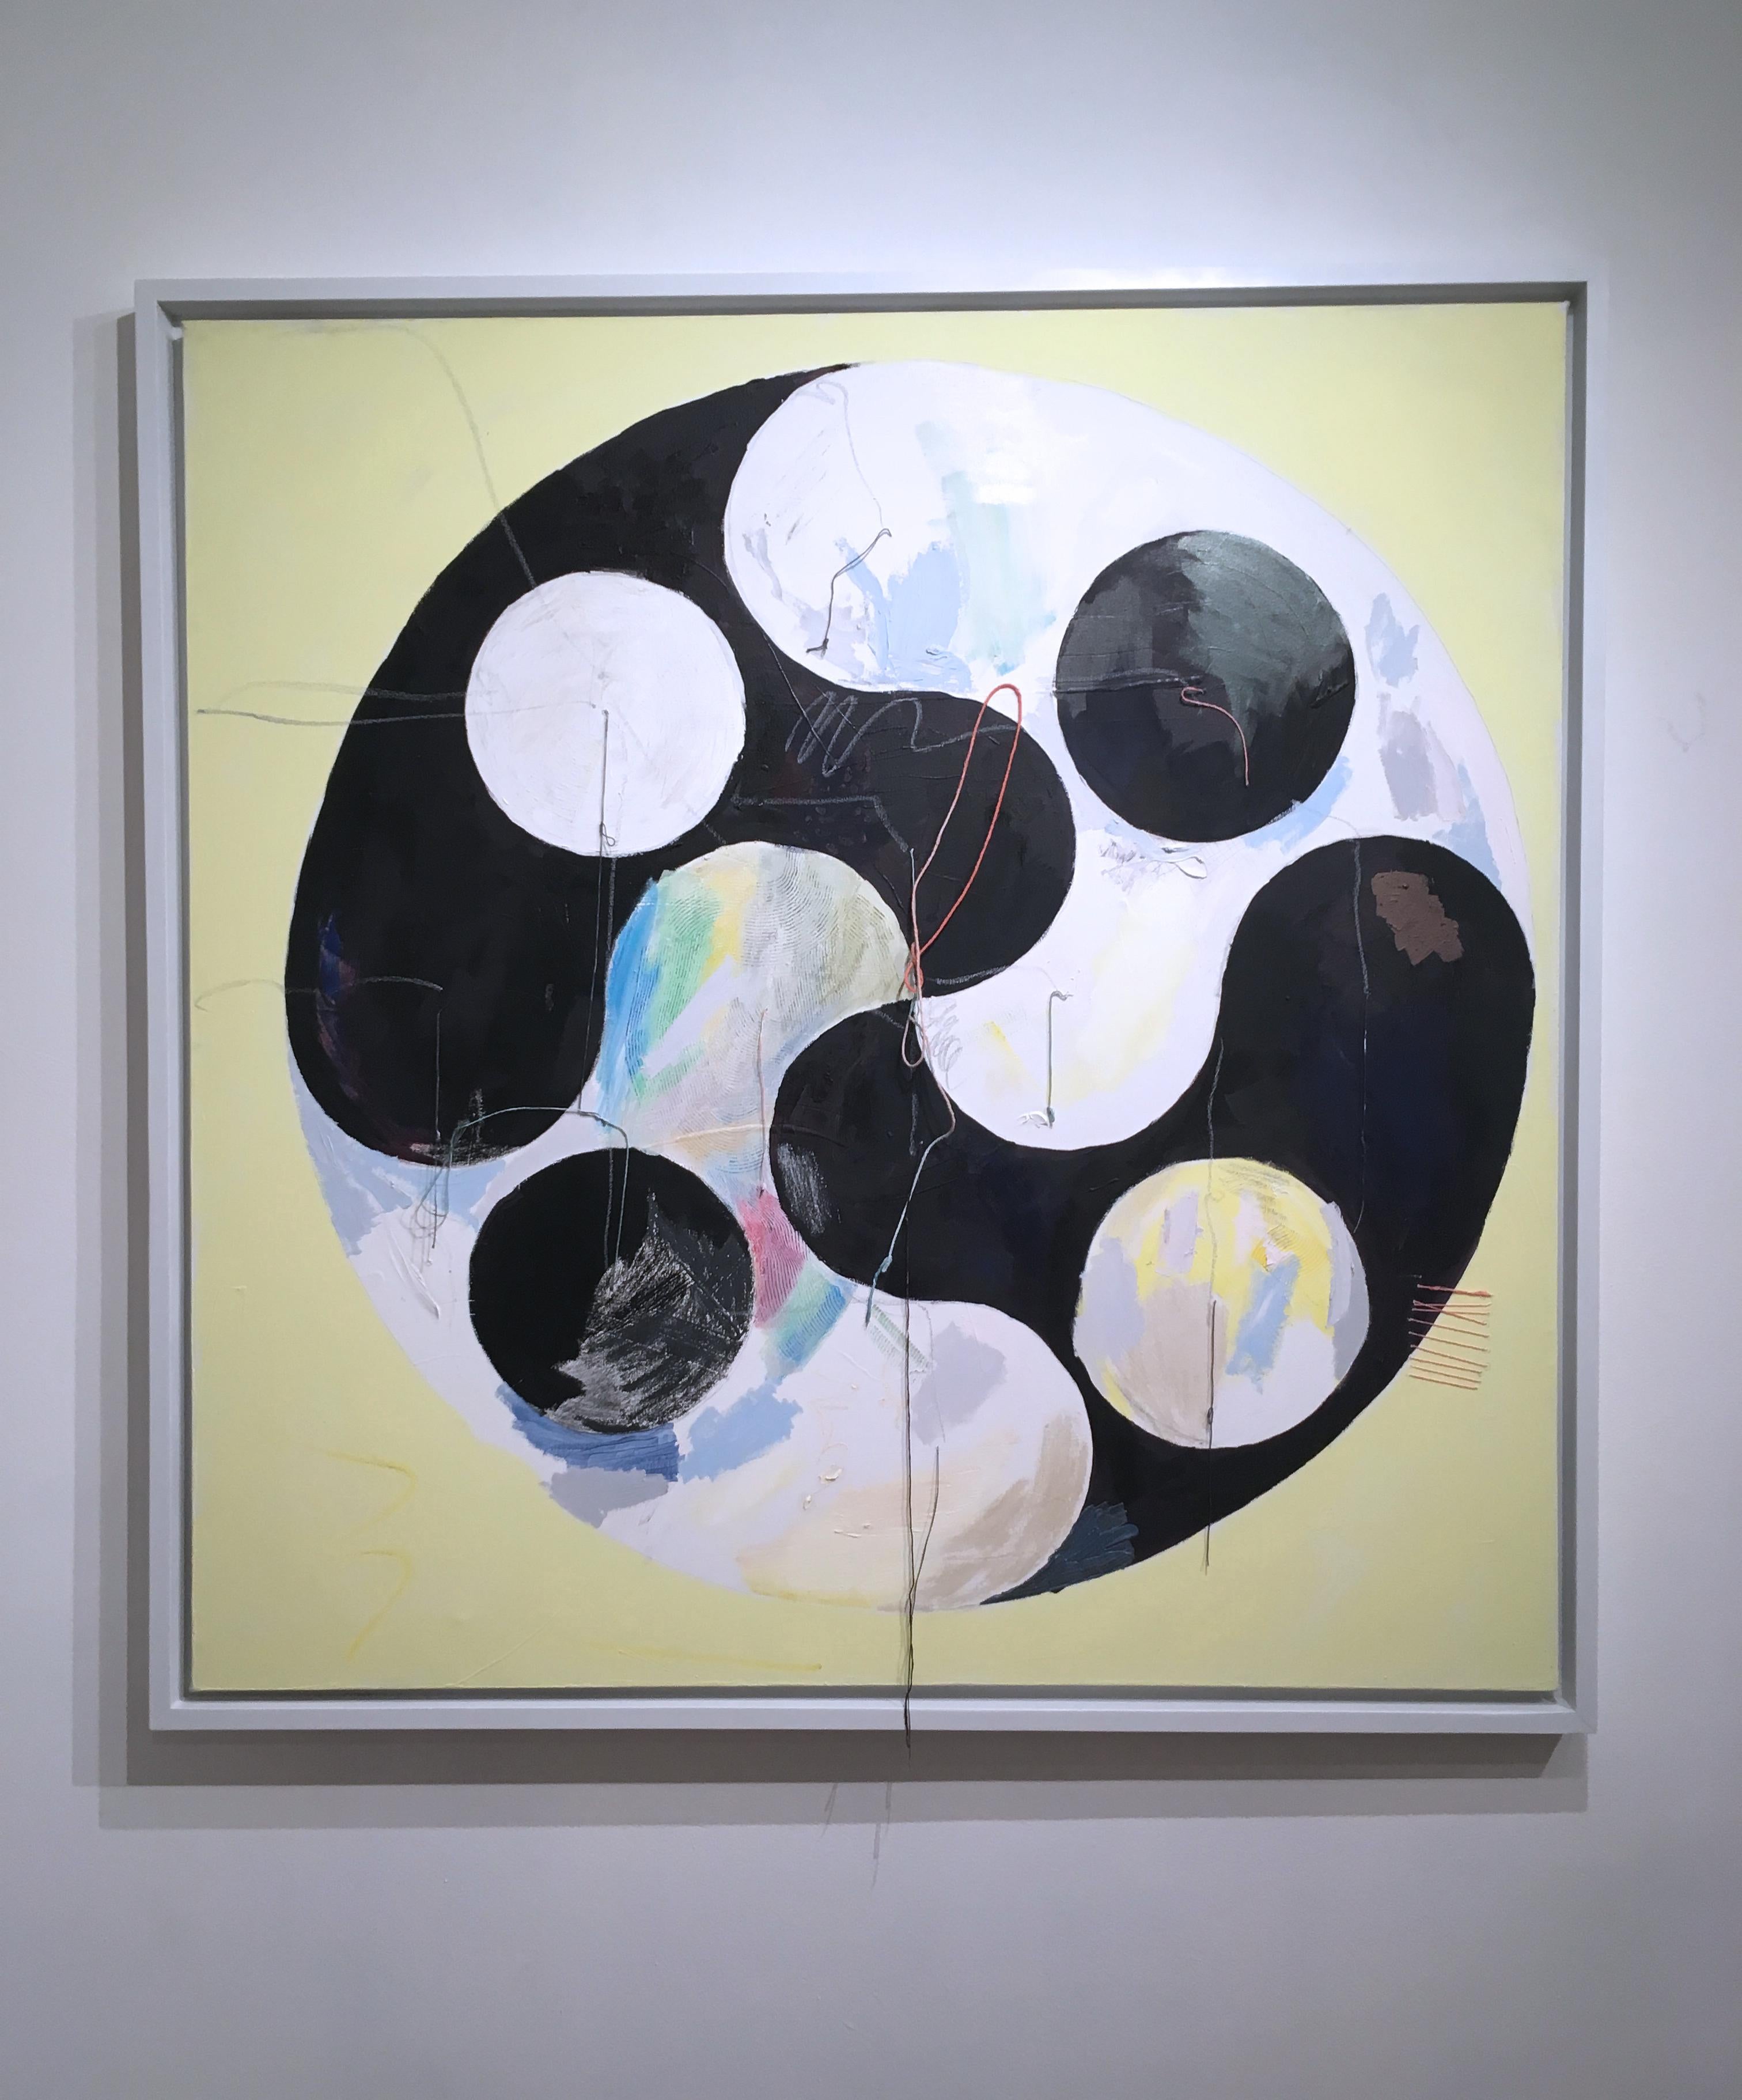 Yin Yang, 2020, acrylique, huile, toile, fil, noir, jaune, abstrait - Painting de Macauley Norman